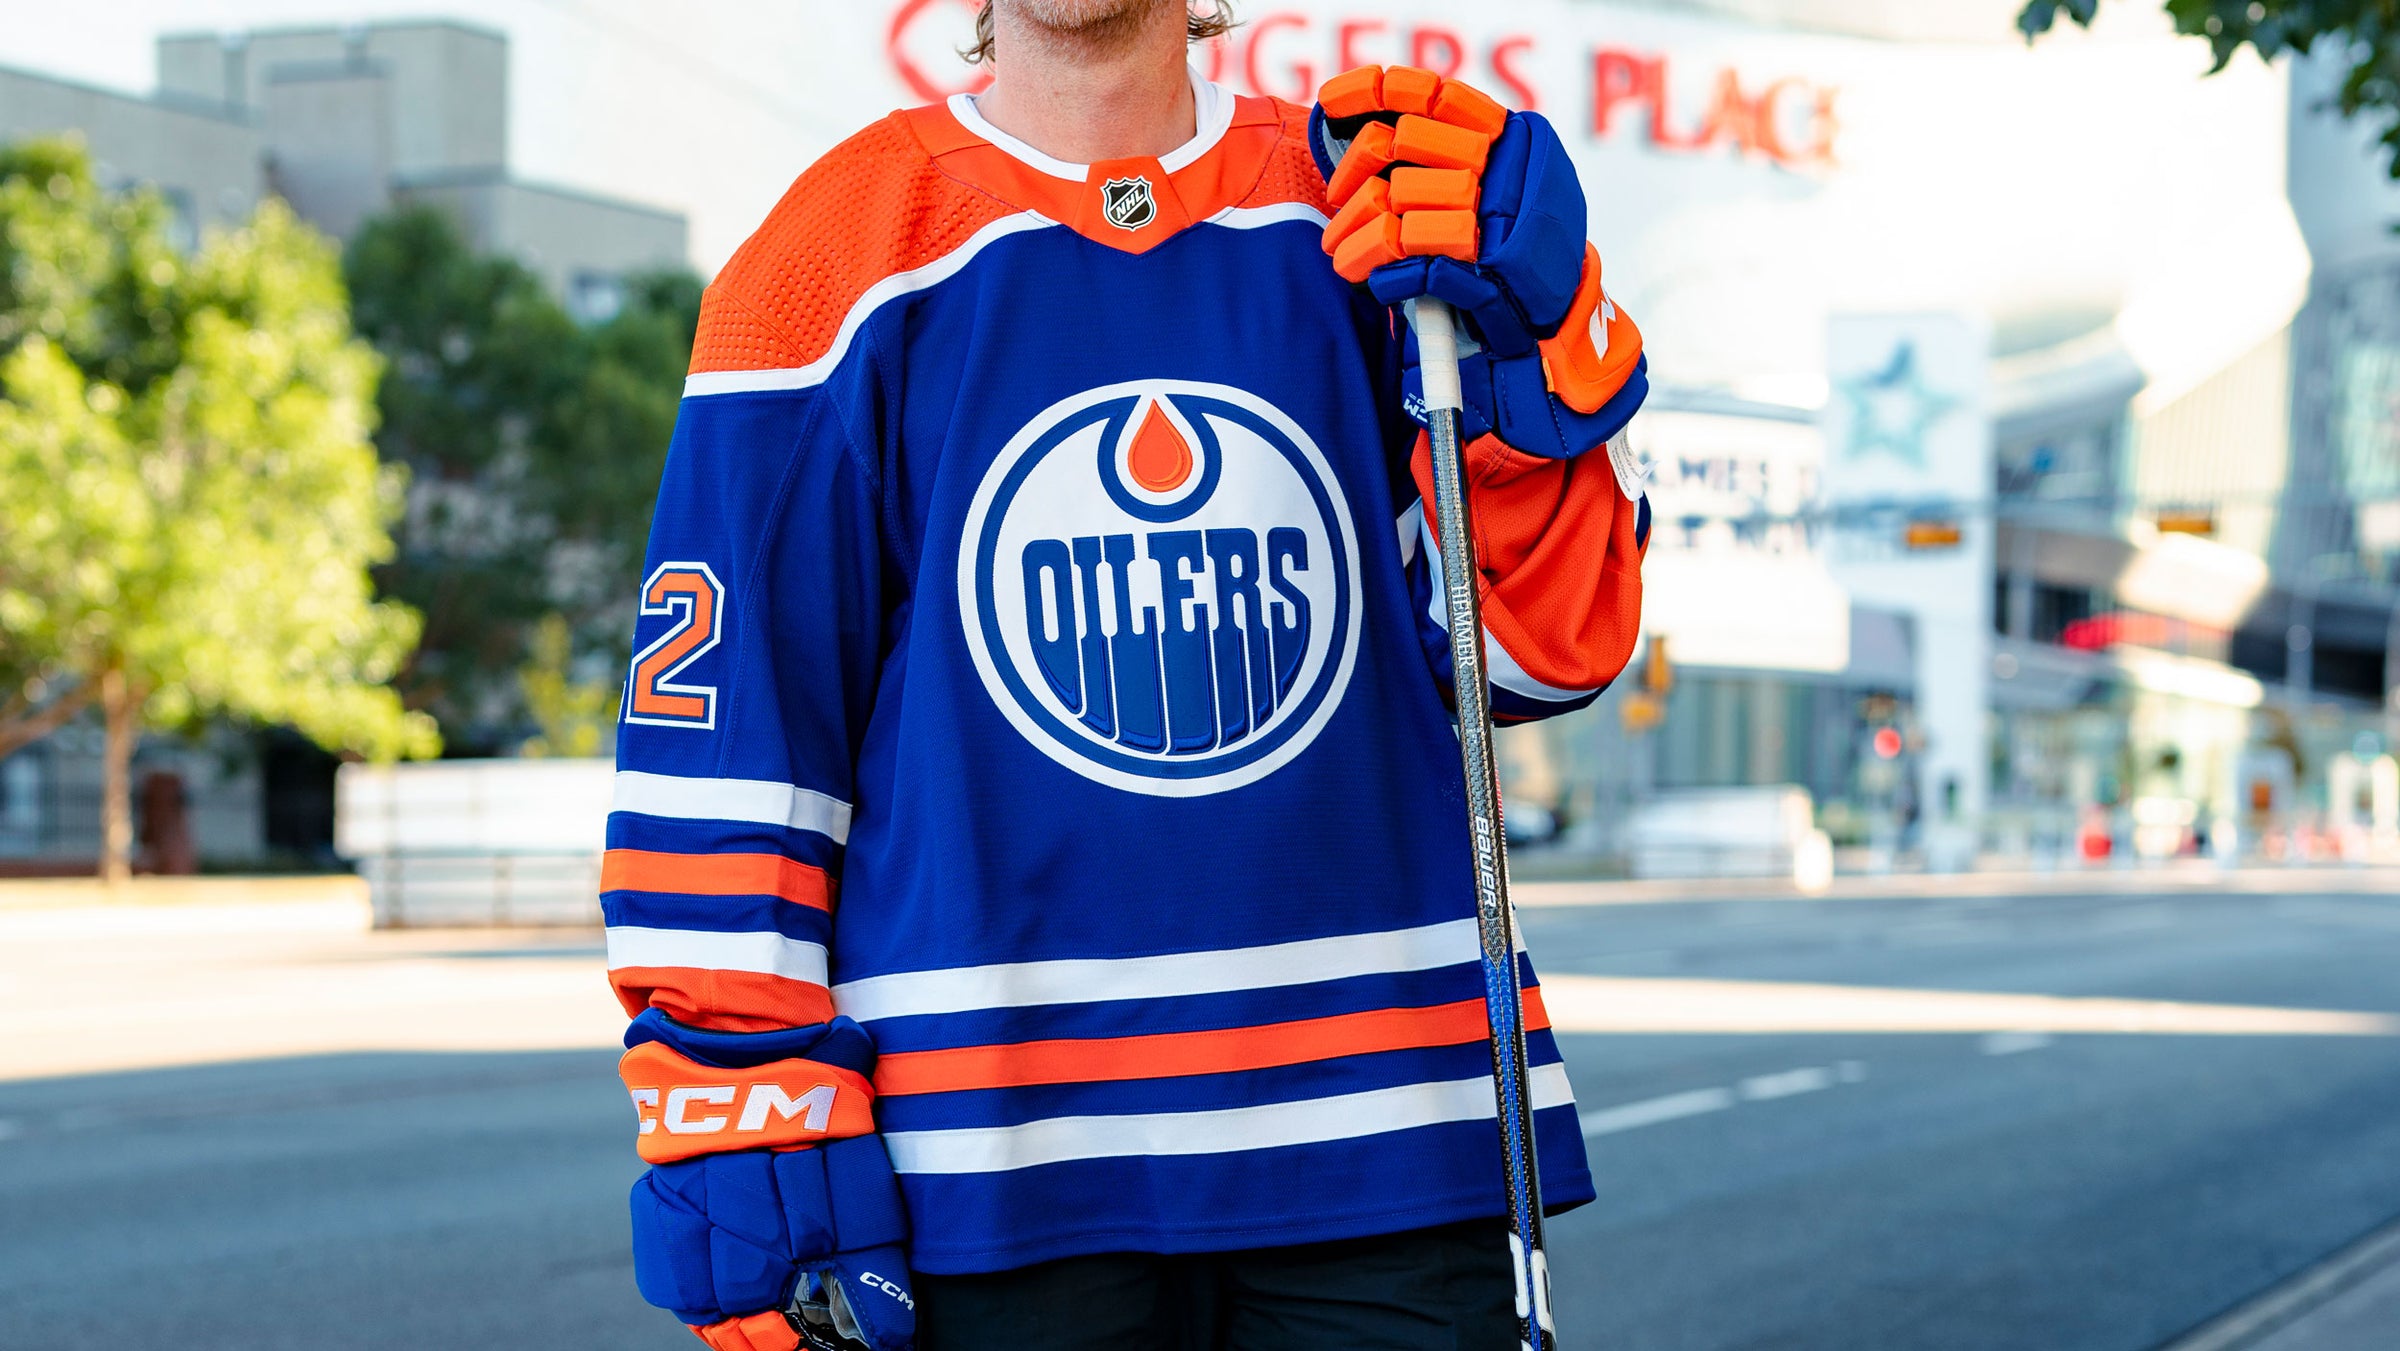 Zach Hyman Edmonton Oilers Jerseys, Oilers Jersey Deals, Oilers Breakaway  Jerseys, Oilers Hockey Sweater